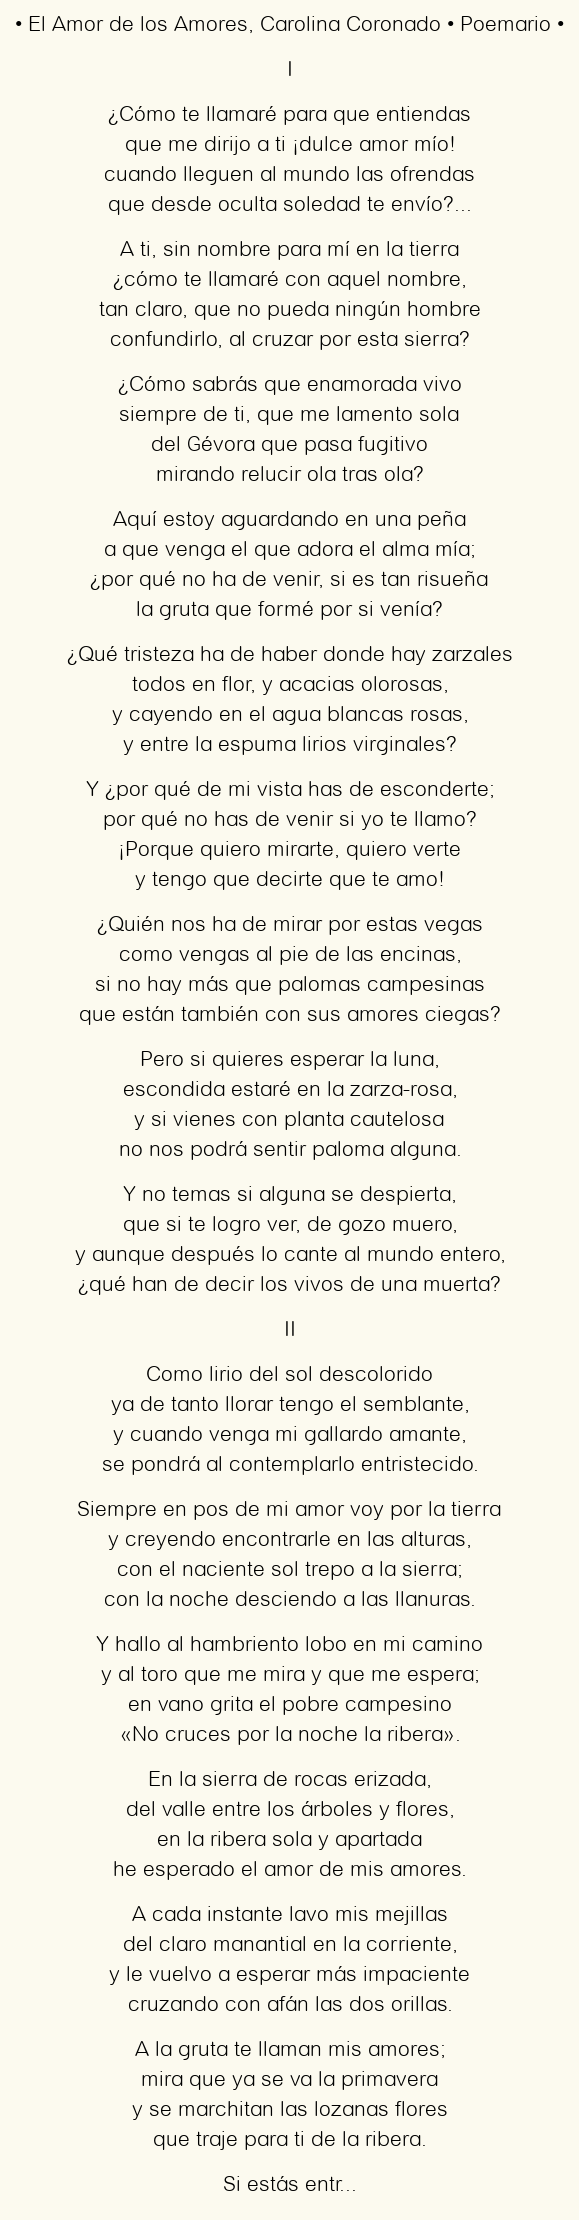 Imagen con el poema El Amor de los Amores, por Carolina Coronado